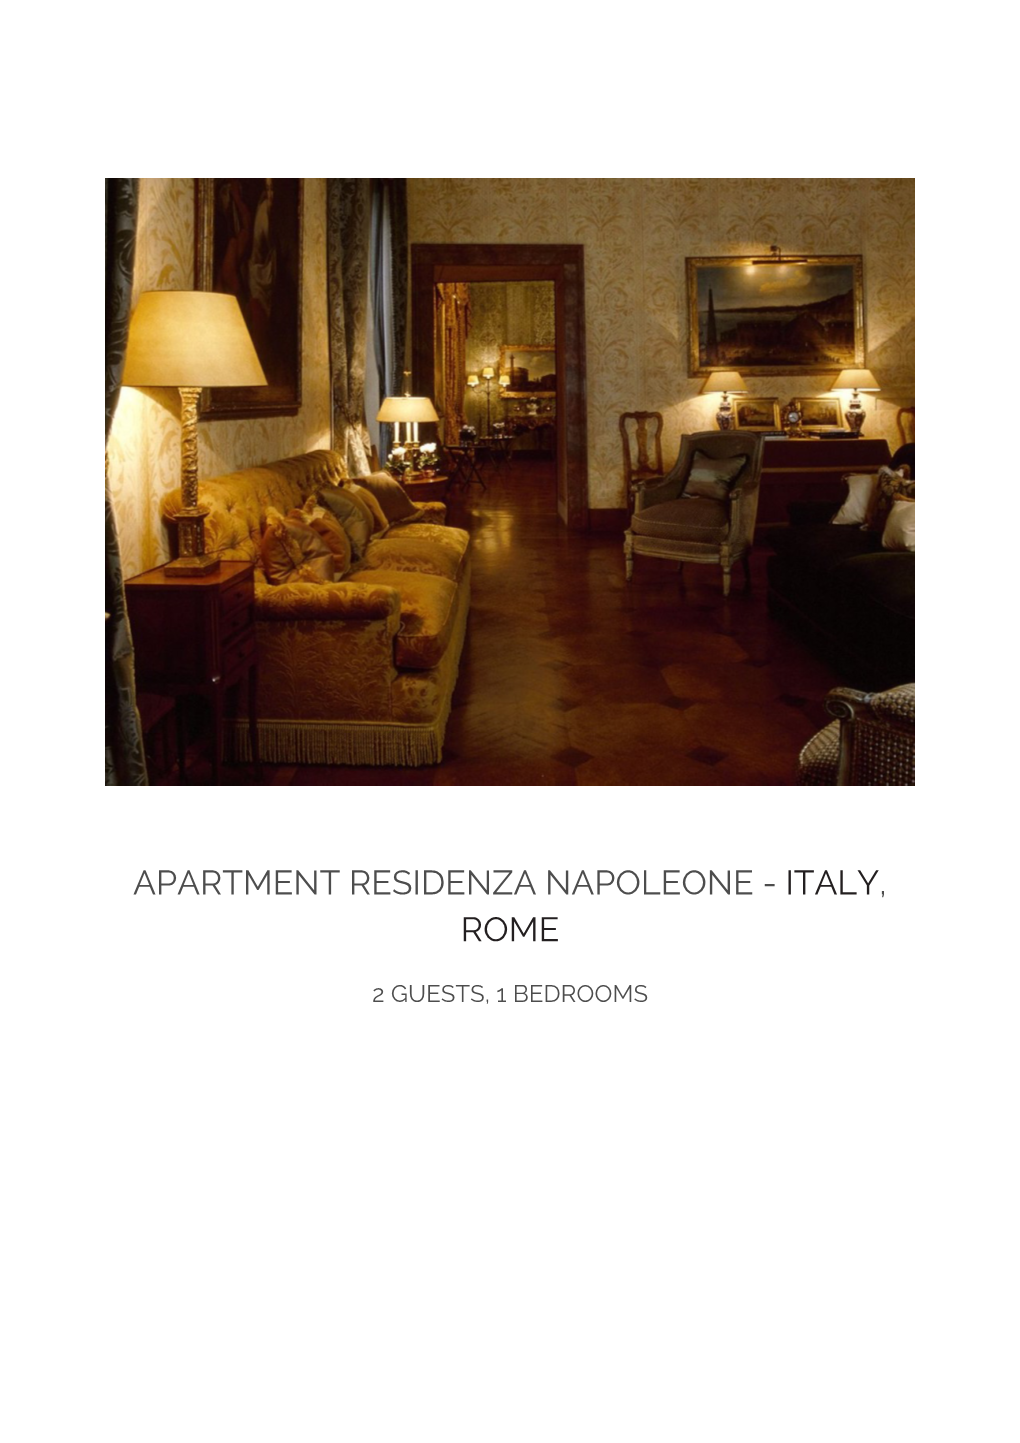 Apartment Residenza Napoleone - Italy, Rome